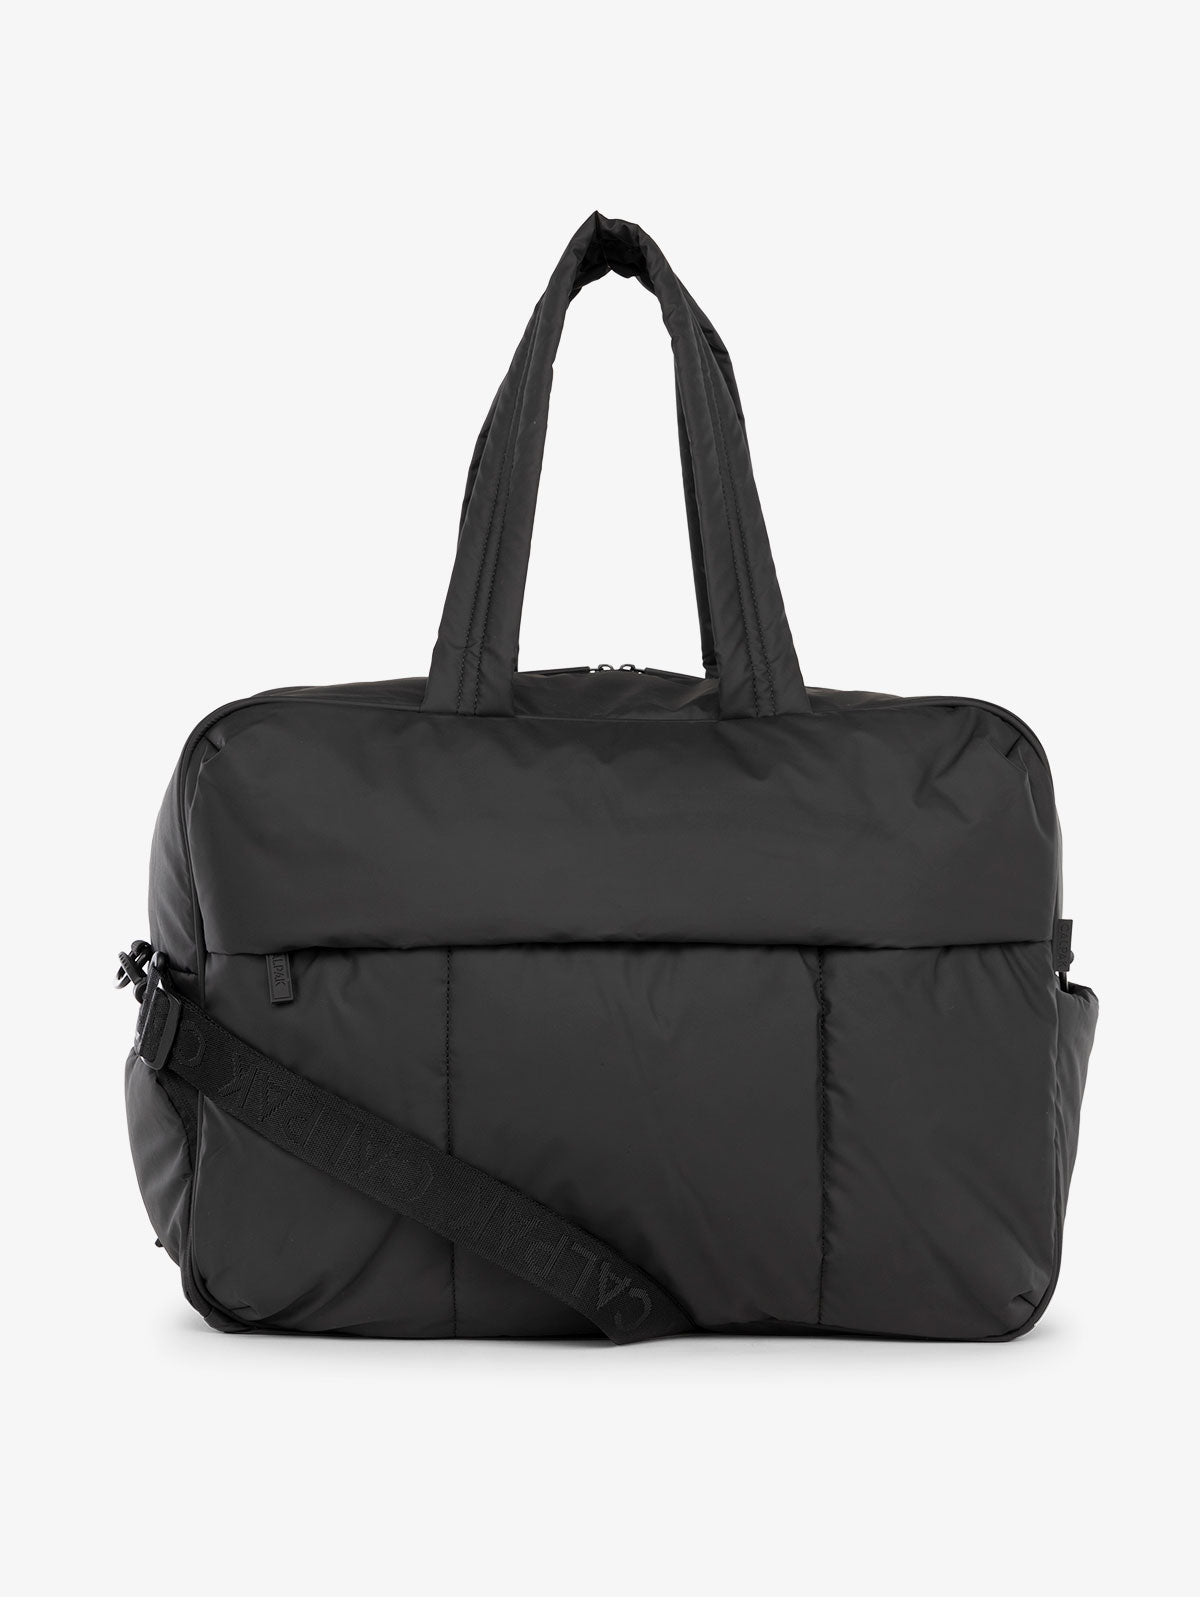 calpak luka large duffel bag personal item｜TikTok Search